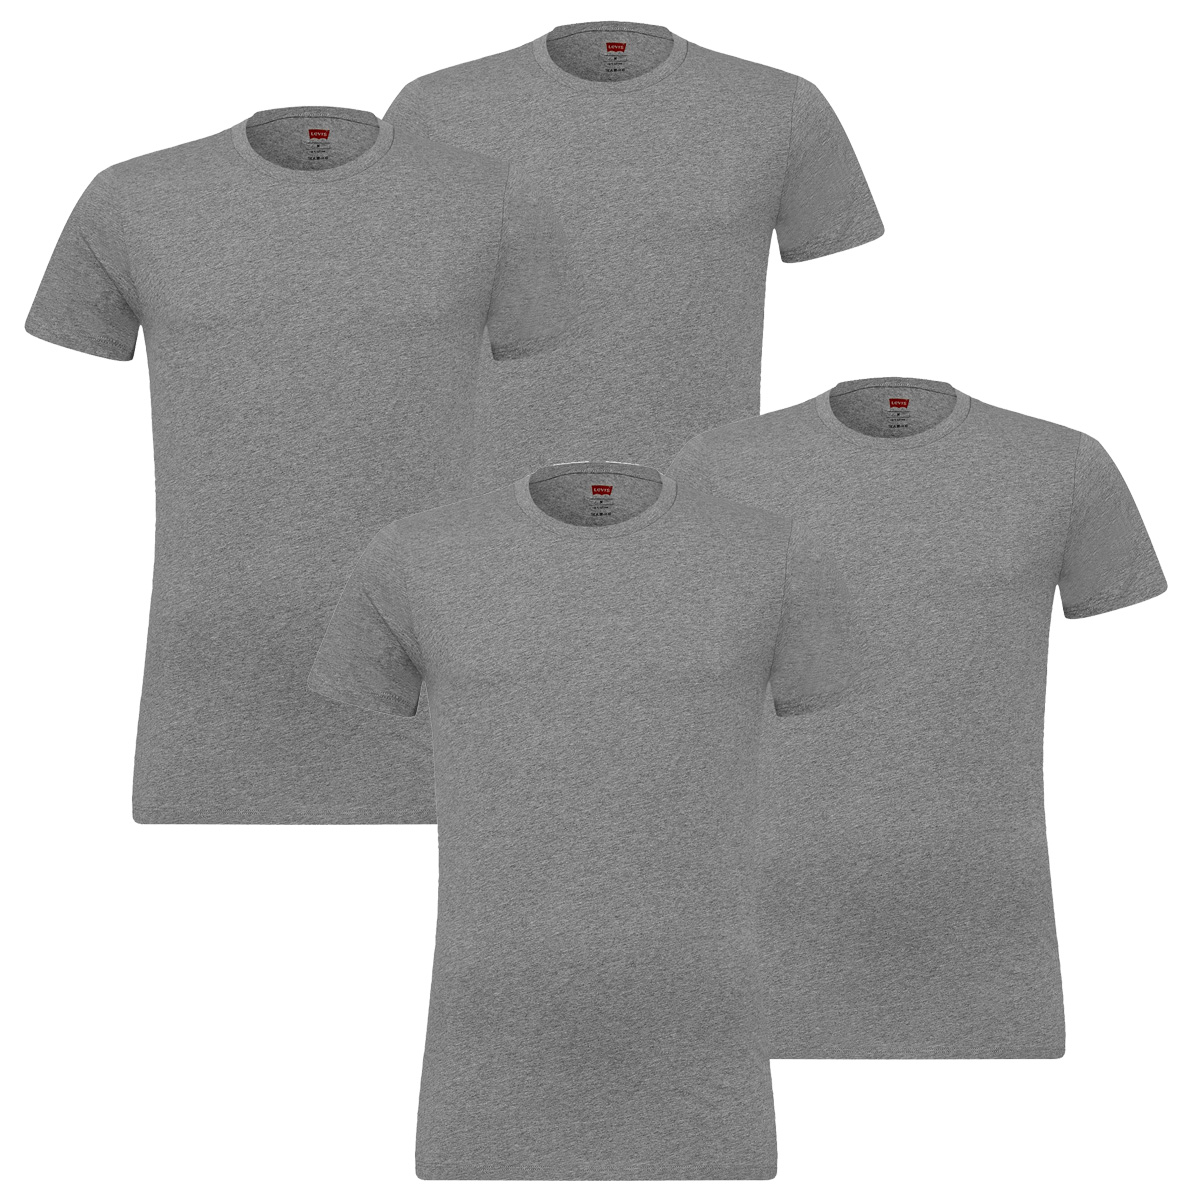 4 er Pack Levis 200SF Crew T-Shirt Men Herren Unterhemd Rundhals, Bekleidungsgröße:M, Farbe:758 - Middle Grey mélange